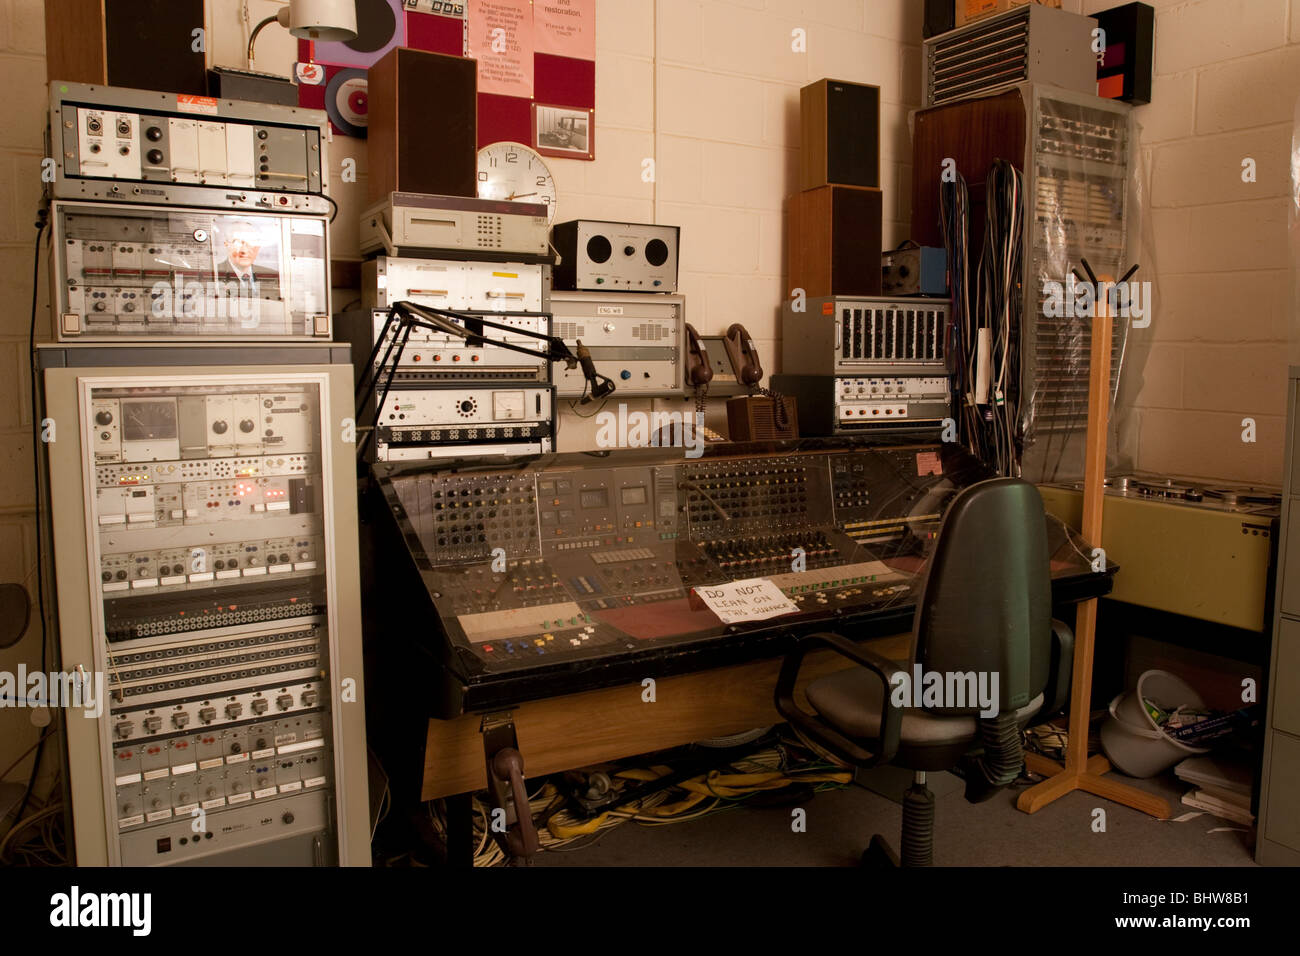 BBC-Radio-Übertragungstechnik, Kelvedon Hatch Atombunker, jetzt für die Öffentlichkeit zugänglich. Stockfoto